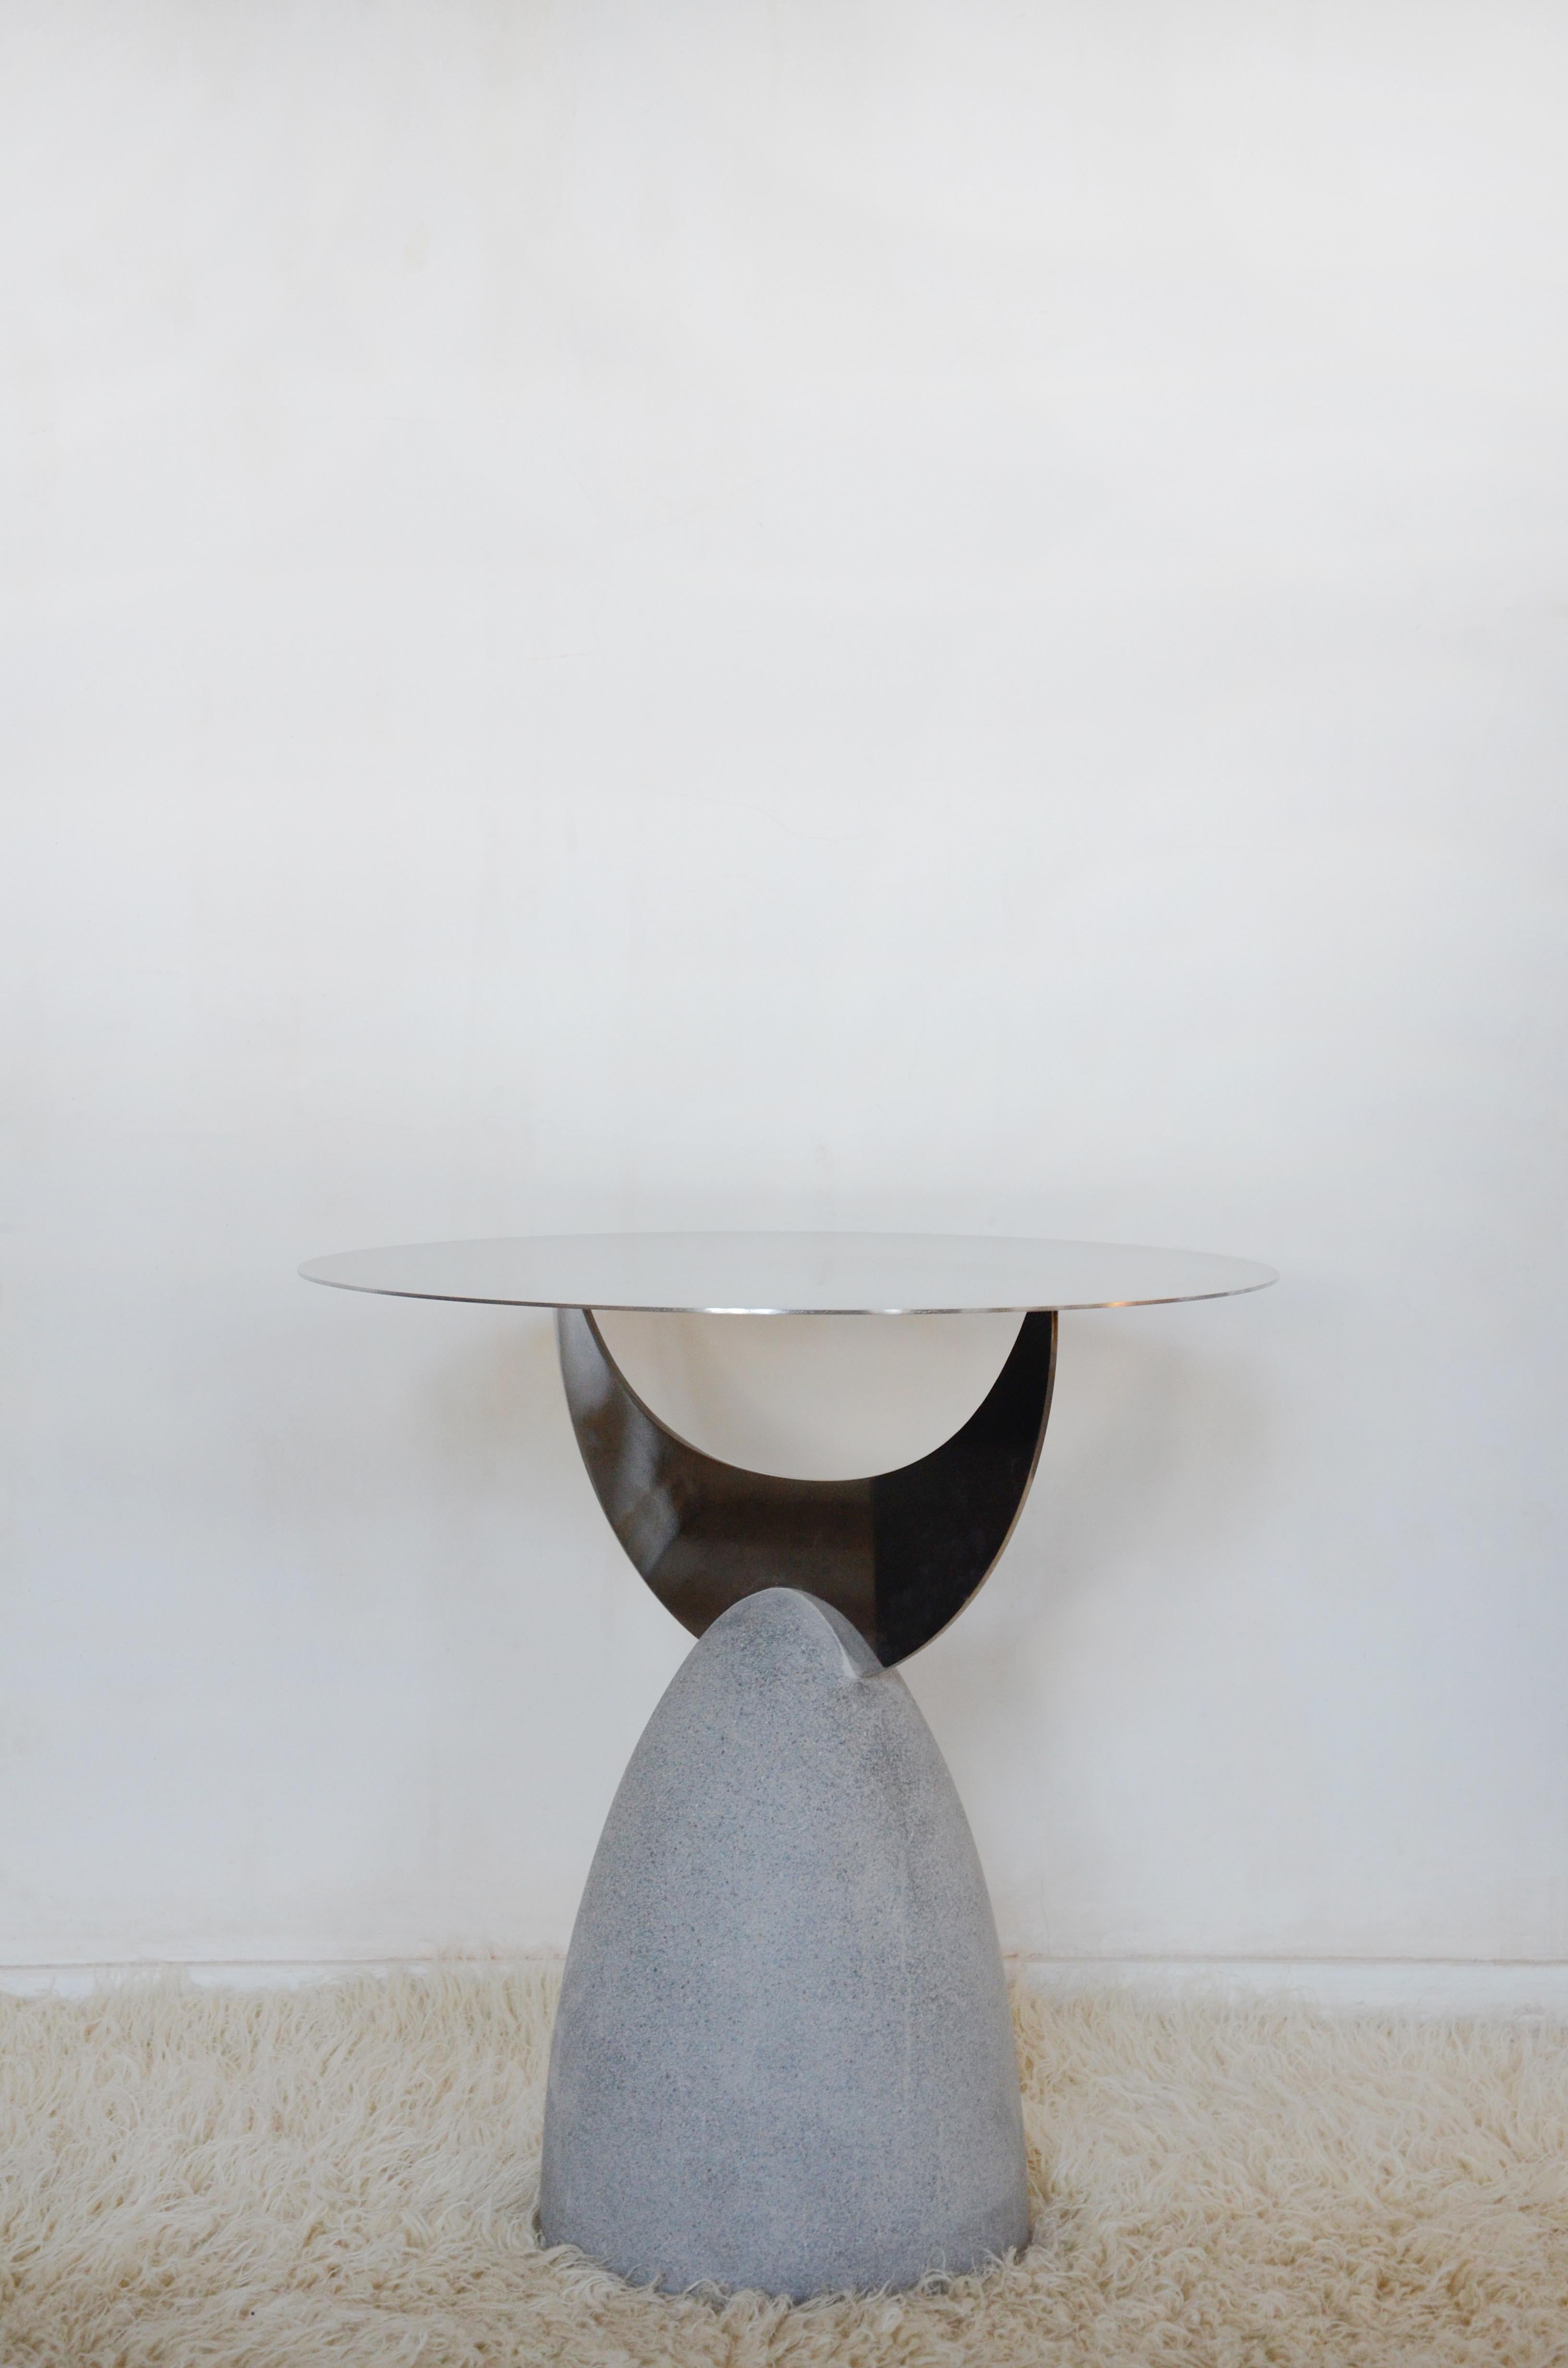 Cette table d'appoint unique et sculpturale en métal et en pierre a été conçue et fabriquée à la main par Rooms Studio à Tbilissi, en Géorgie. La pièce présente un plateau circulaire en acier inoxydable à finition miroir, placé sur un croissant de